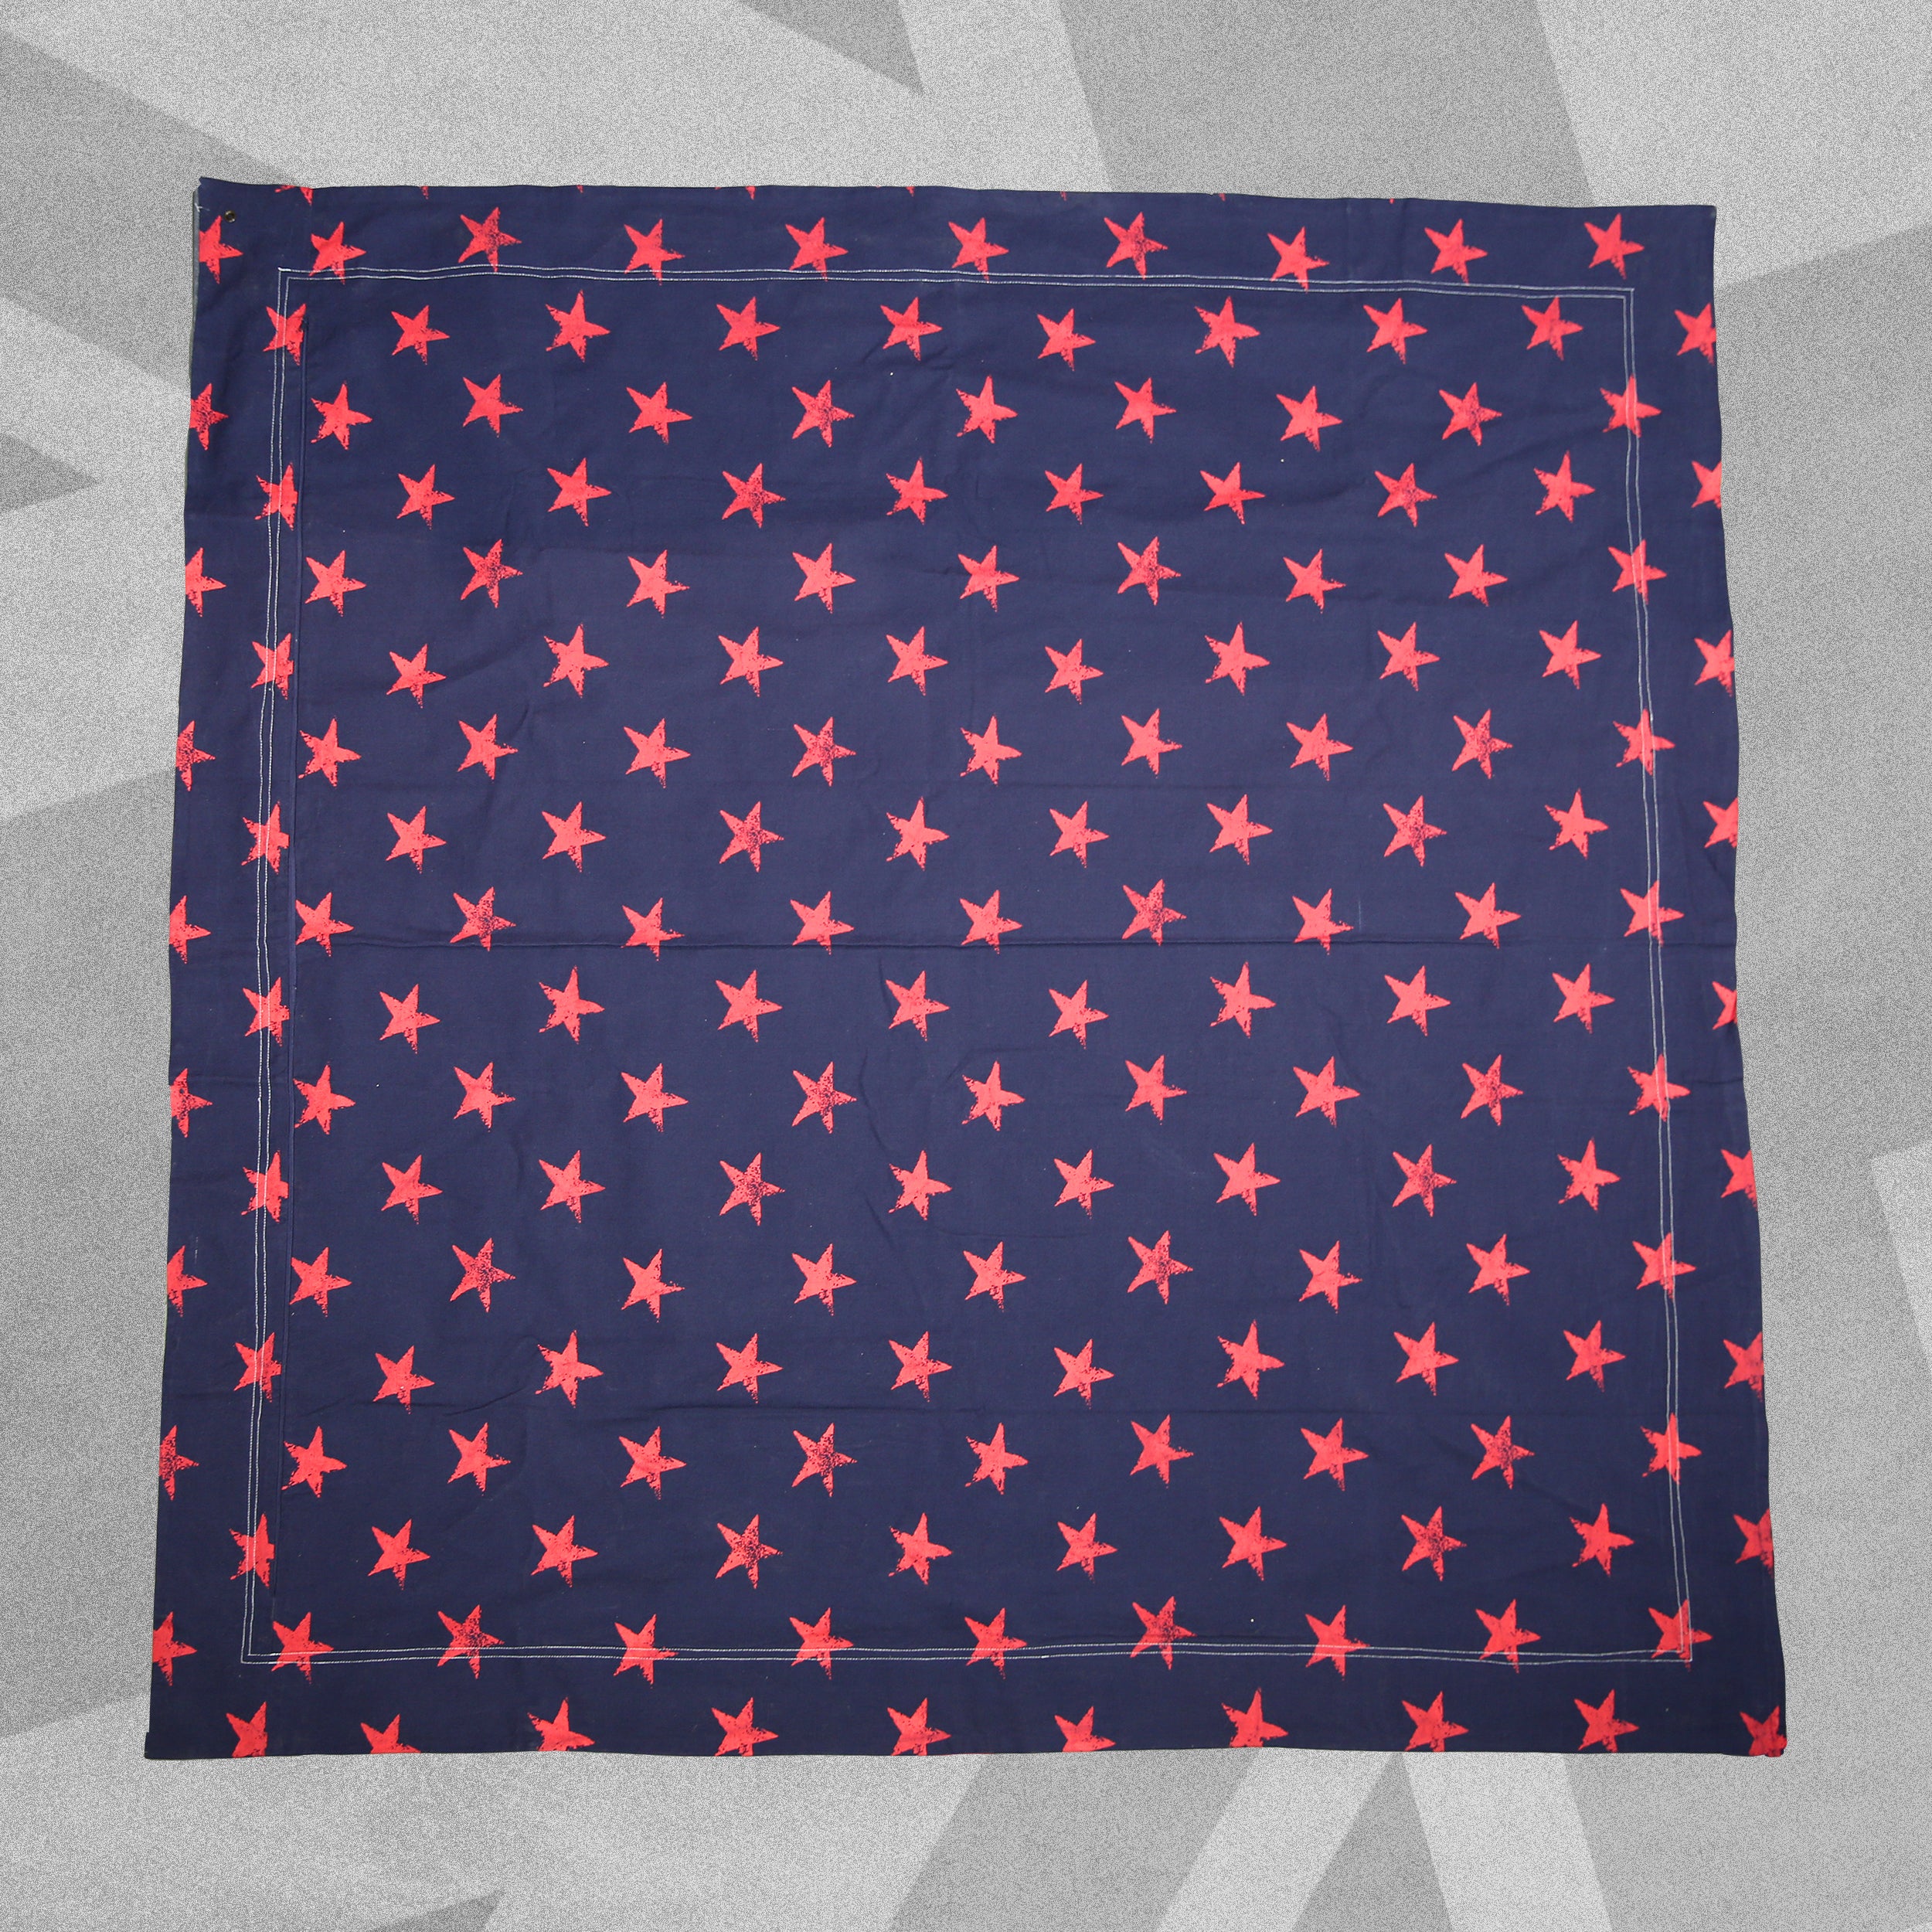 Giant Floor Cushion Cover - Flag and Stars - 145cm x 145cm